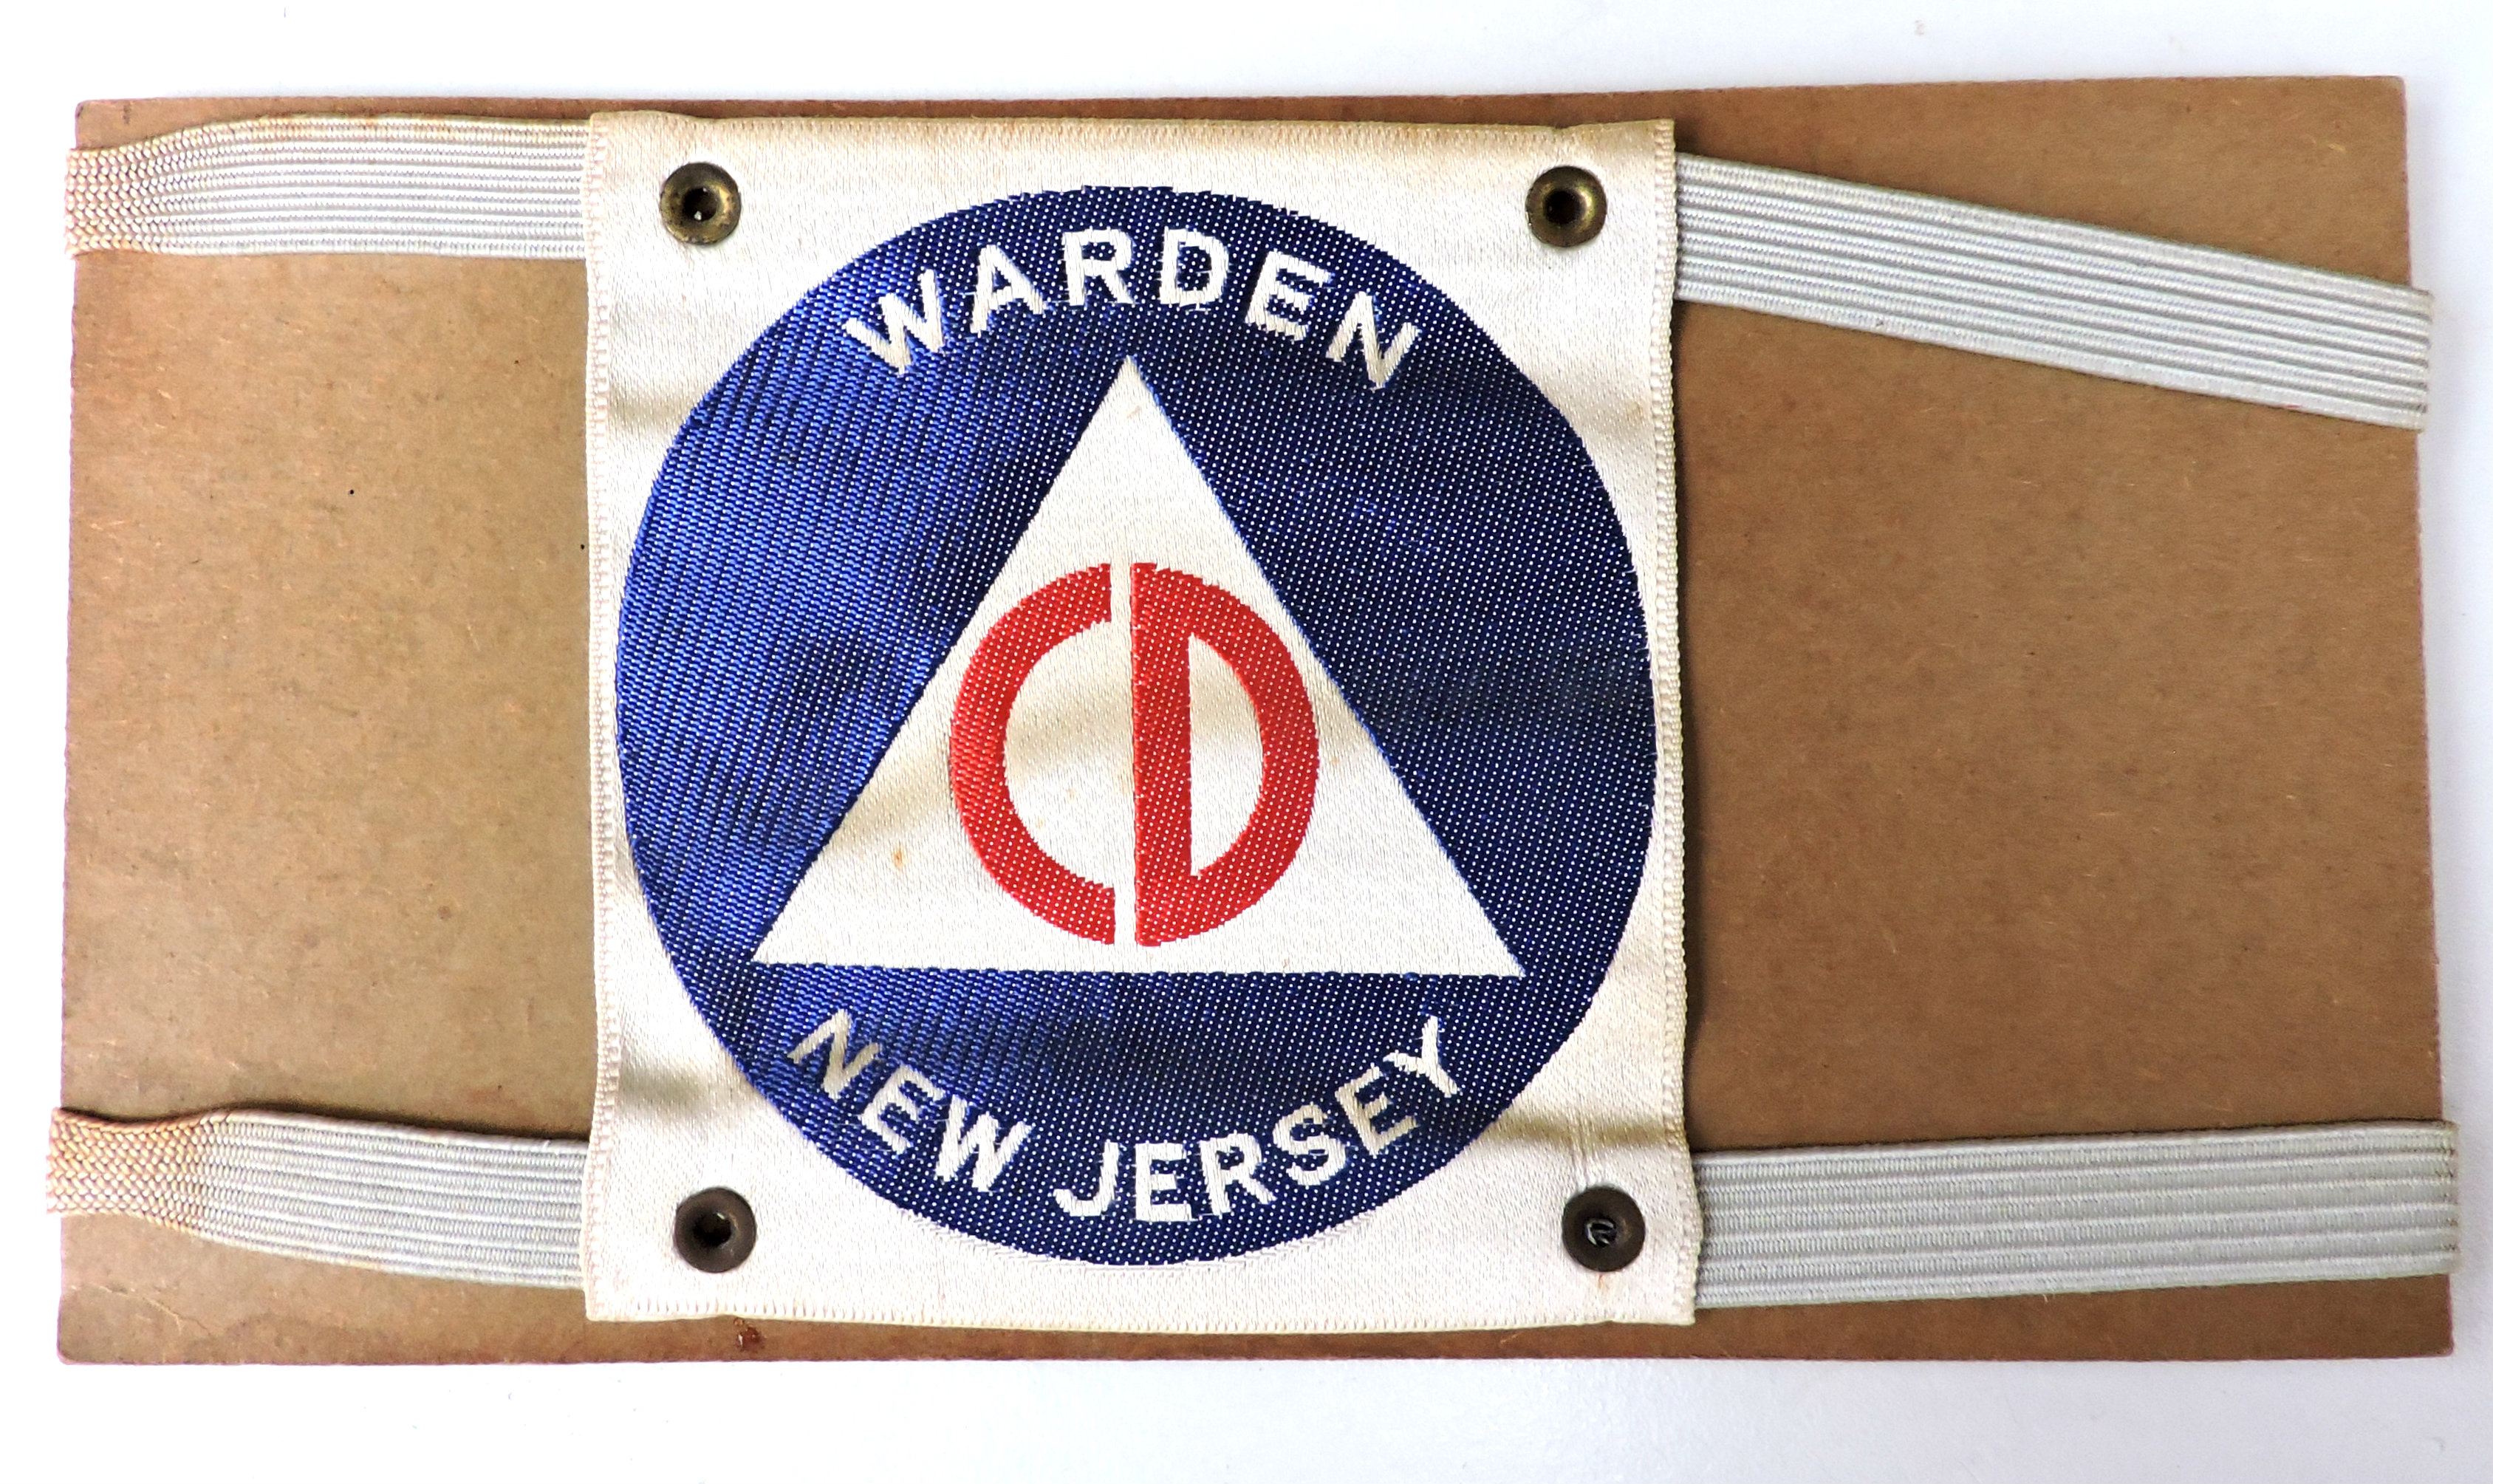 Brassard Civil Defense Warden  New Jersey   WW2